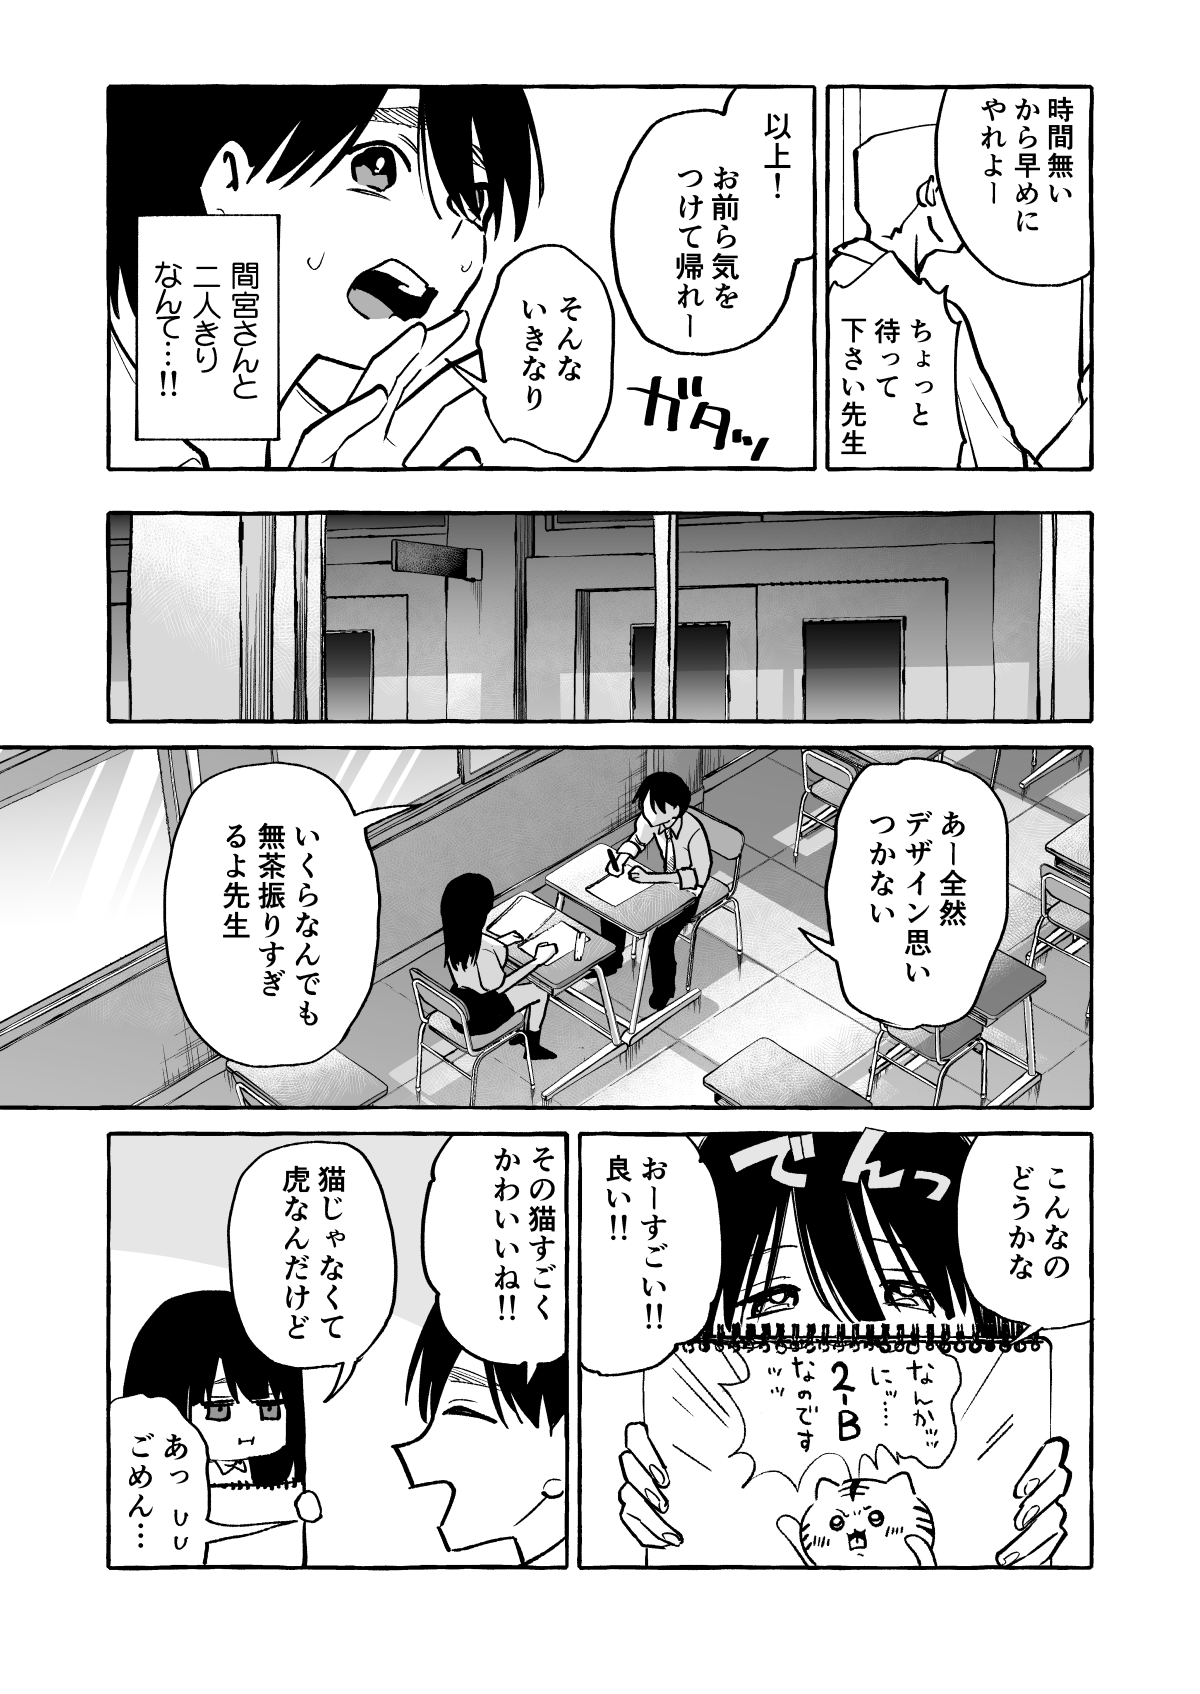 隣の席の間宮さん-9 【エロ漫画JK】隣の席の女の子が授業中におっぱいを見せつけてくるんですけどwww